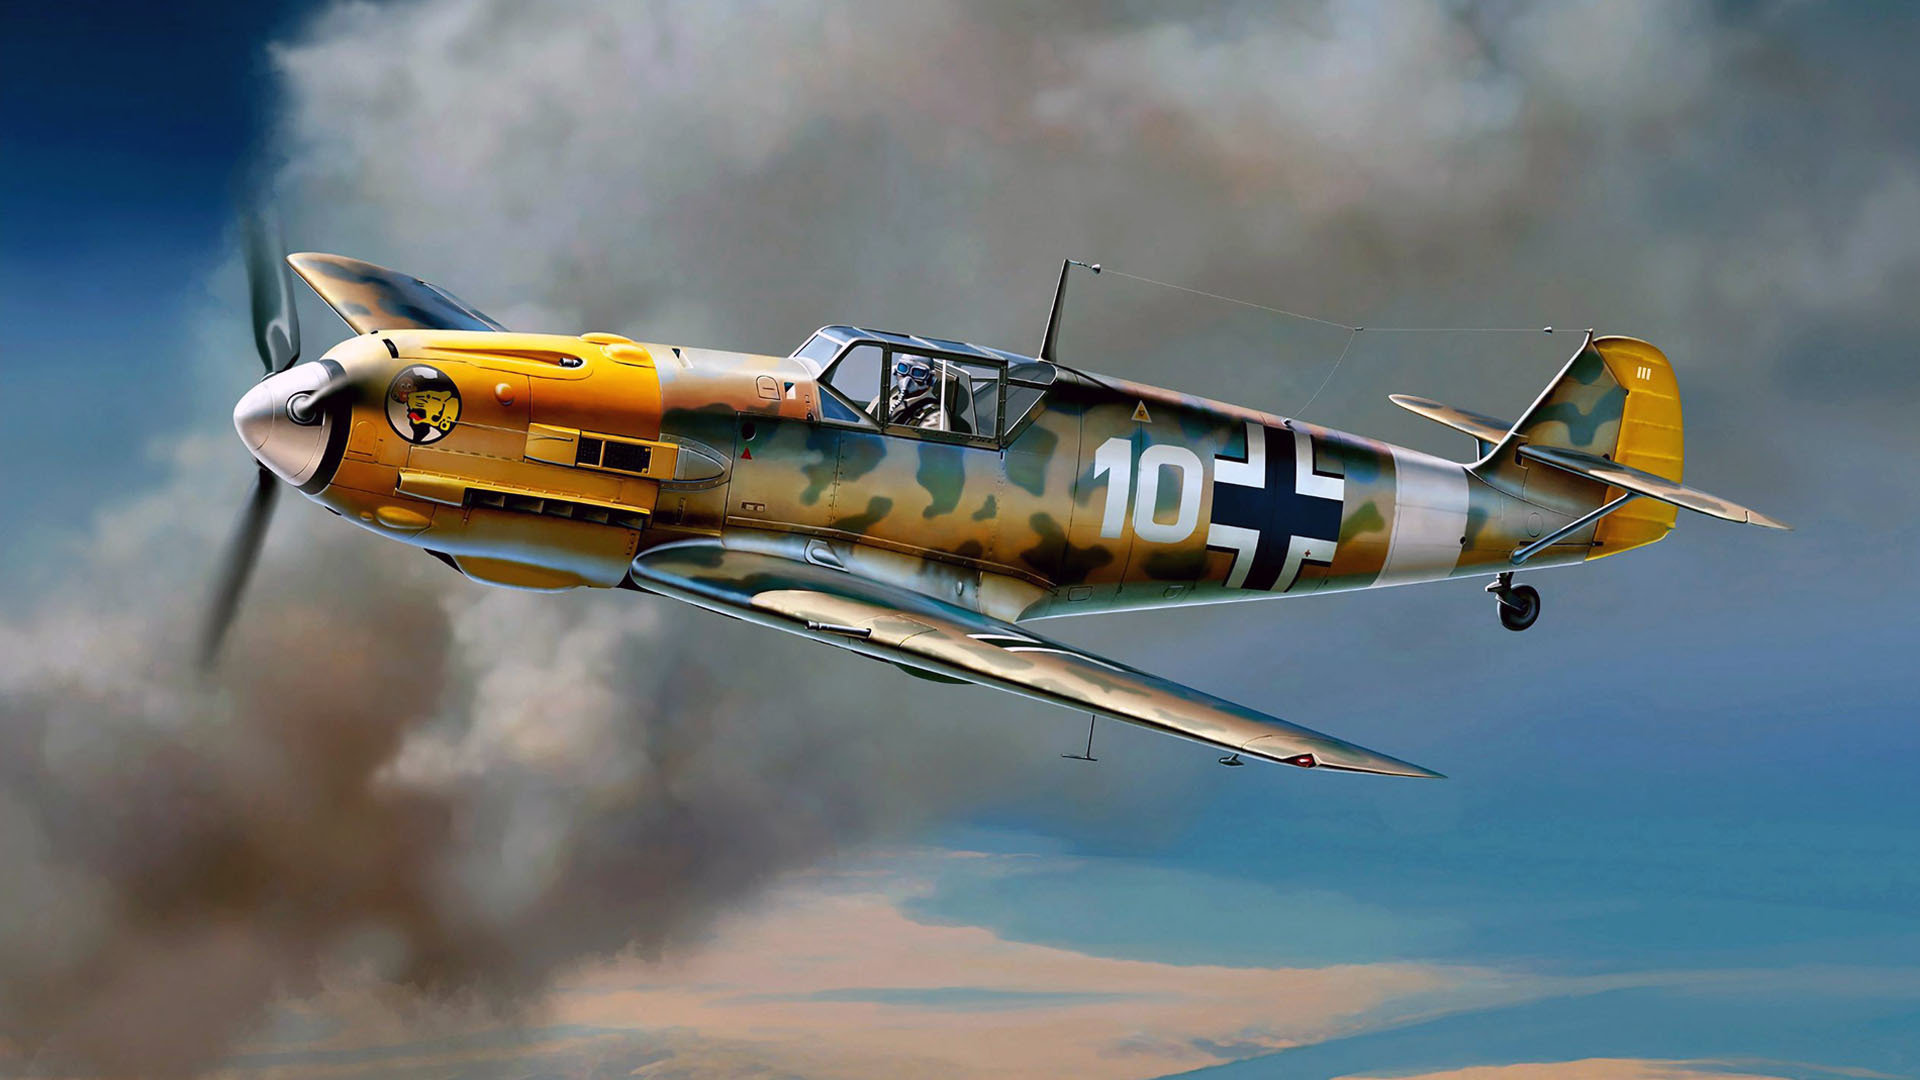 Free Messerschmitt Bf 109 High Quality Wallpaper Id - Bf 109 Wallpaper Hd - HD Wallpaper 